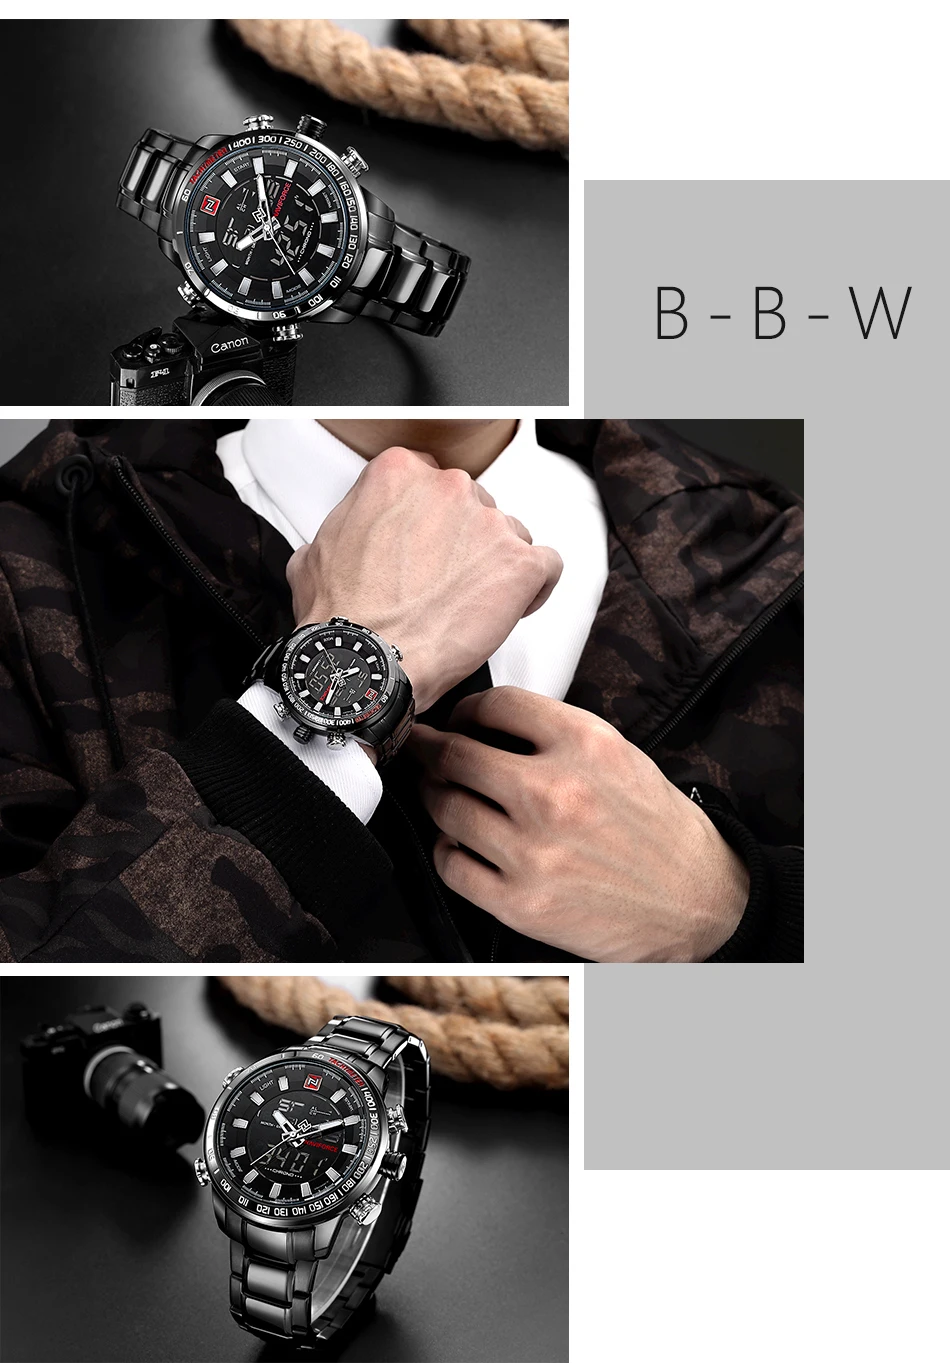 NAVIFORCE новые роскошные мужские спортивные часы Chrono брендовые военные водонепроницаемые электронные наручные часы с подсветкой мужские часы с секундомером